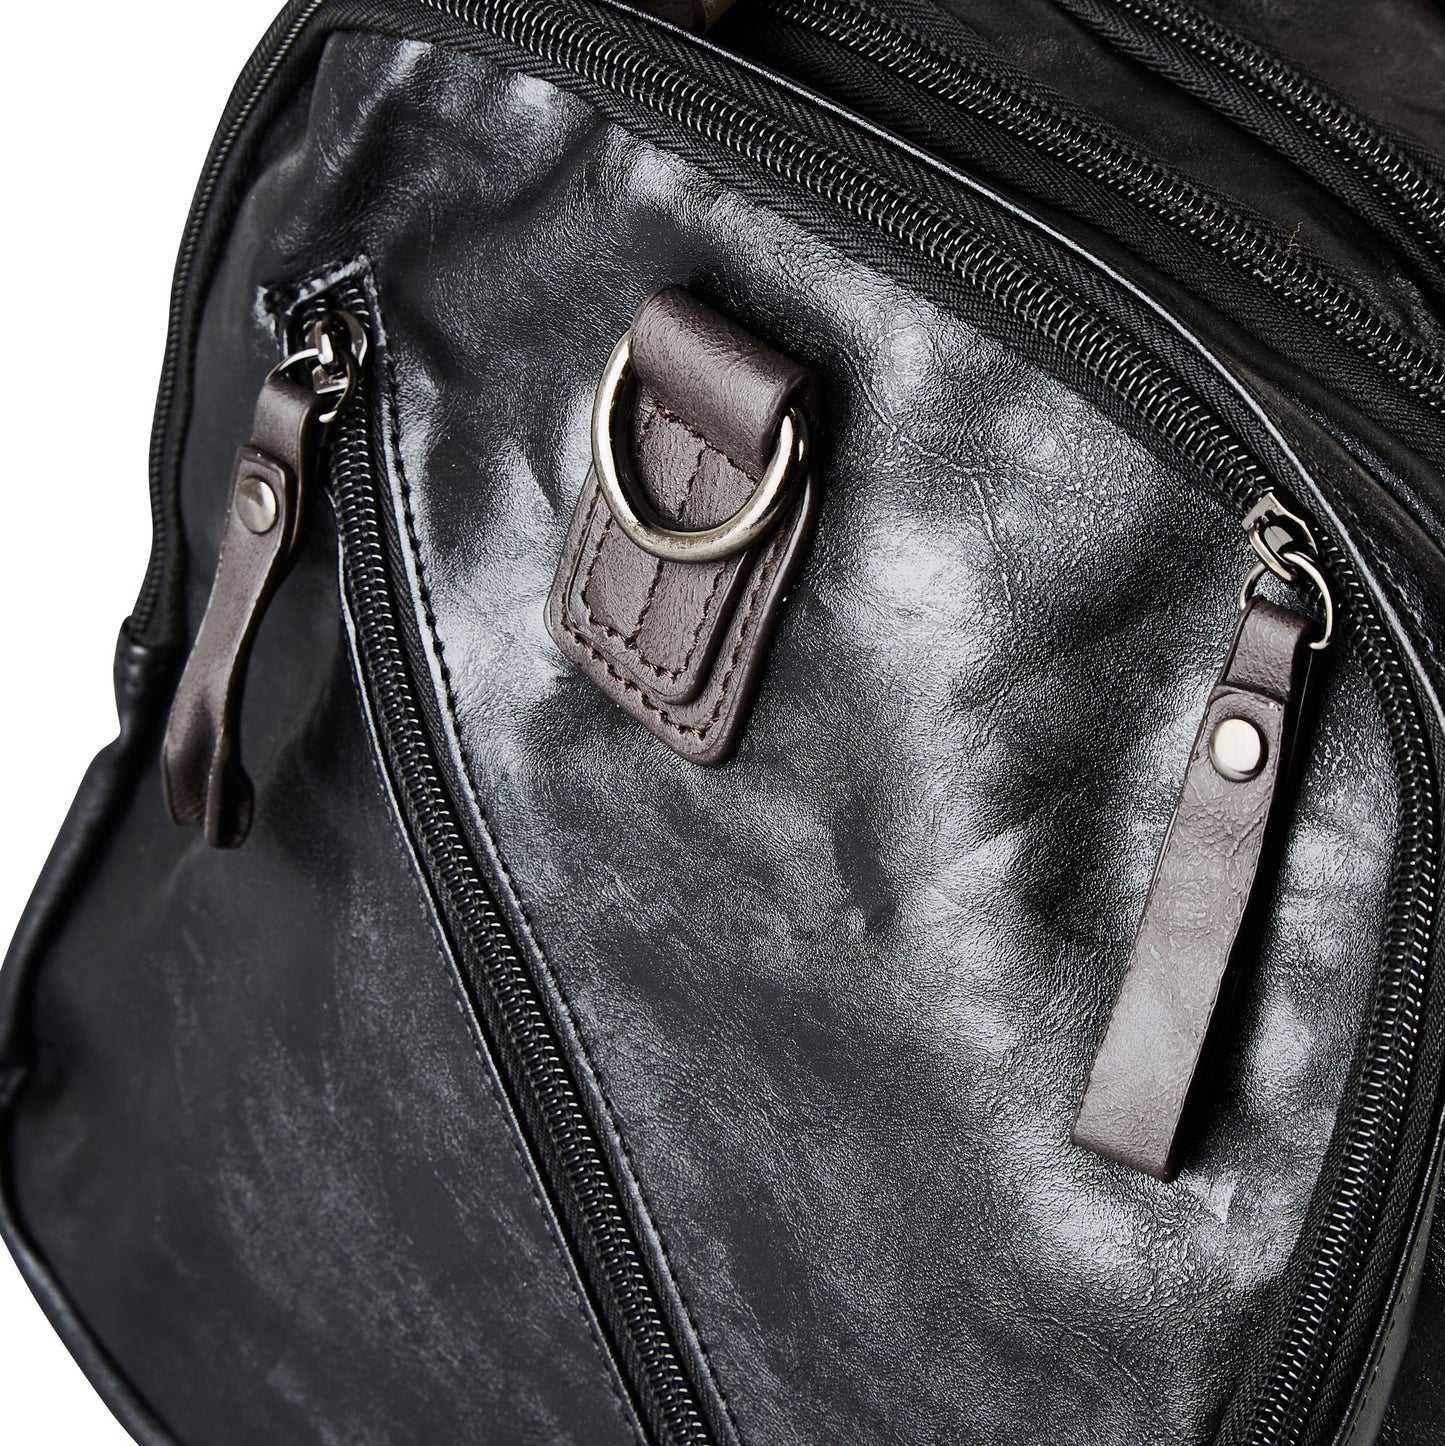 ISUZI ‘The Traveler’ Leather Bag